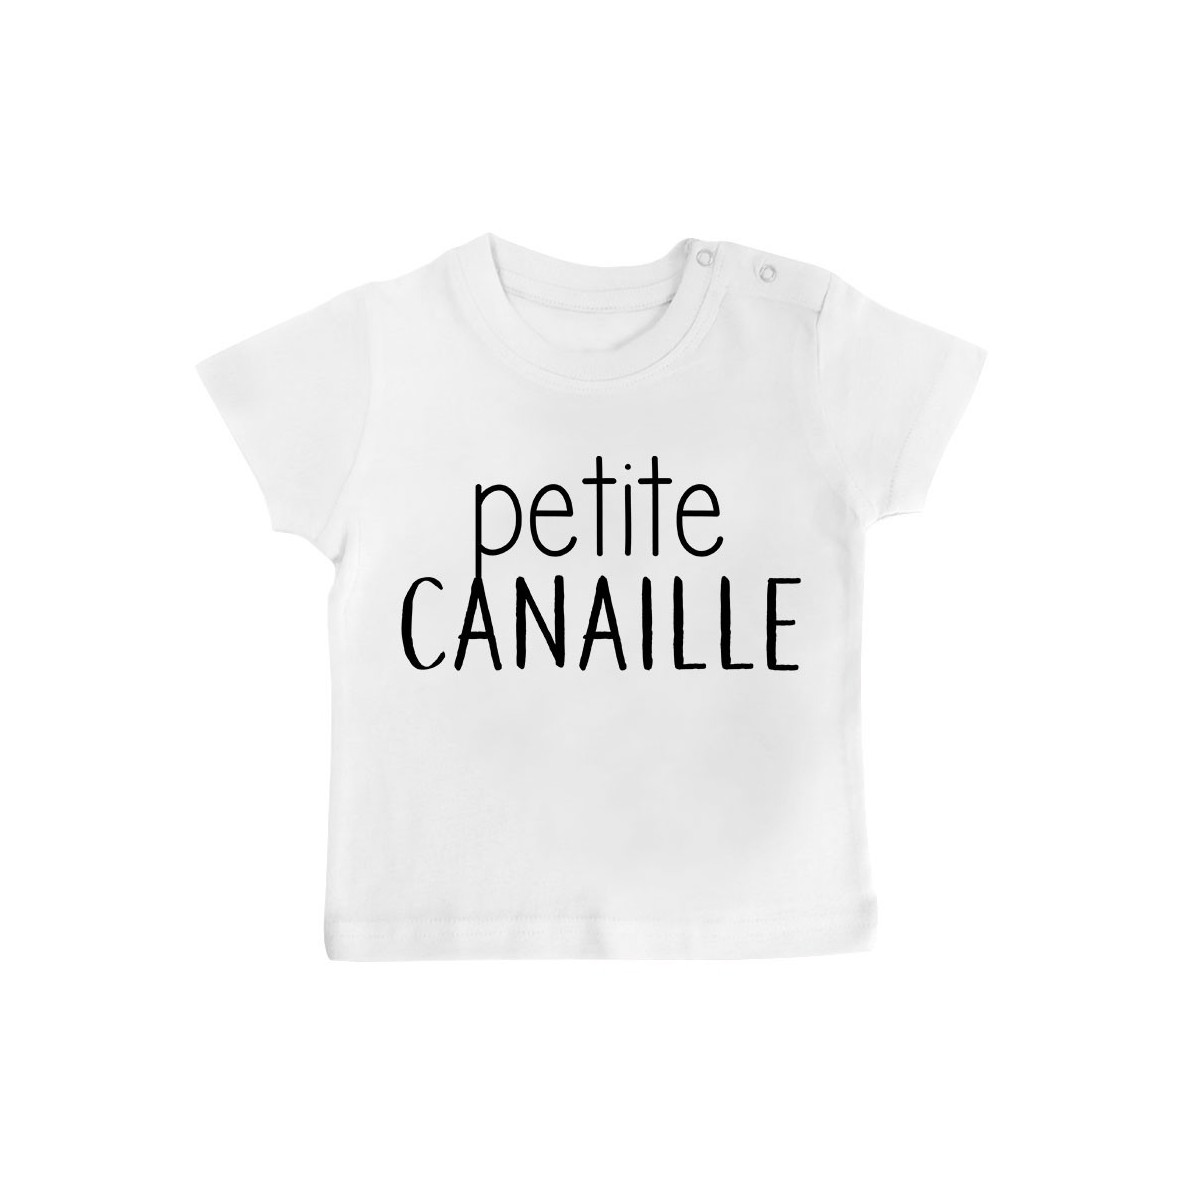 T-Shirt bébé Petite canaille